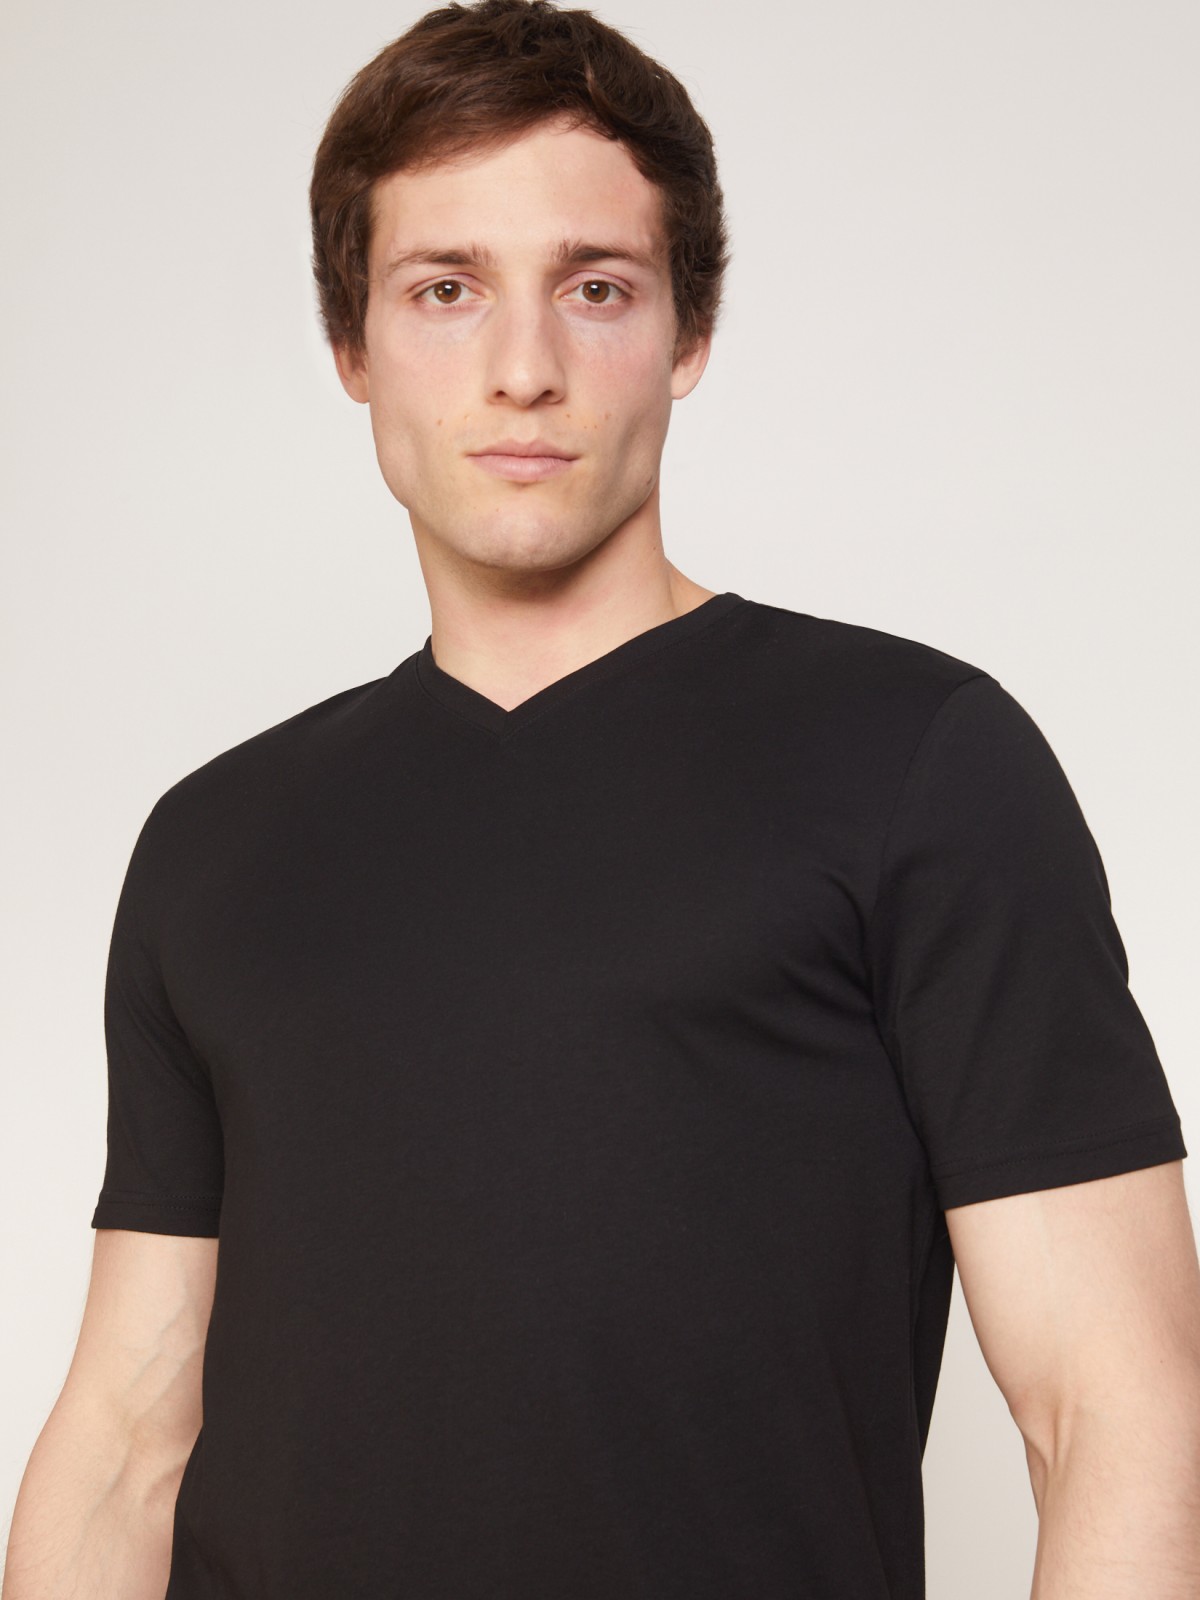 Хлопковая футболка zolla 011313273022, цвет черный, размер XS - фото 4